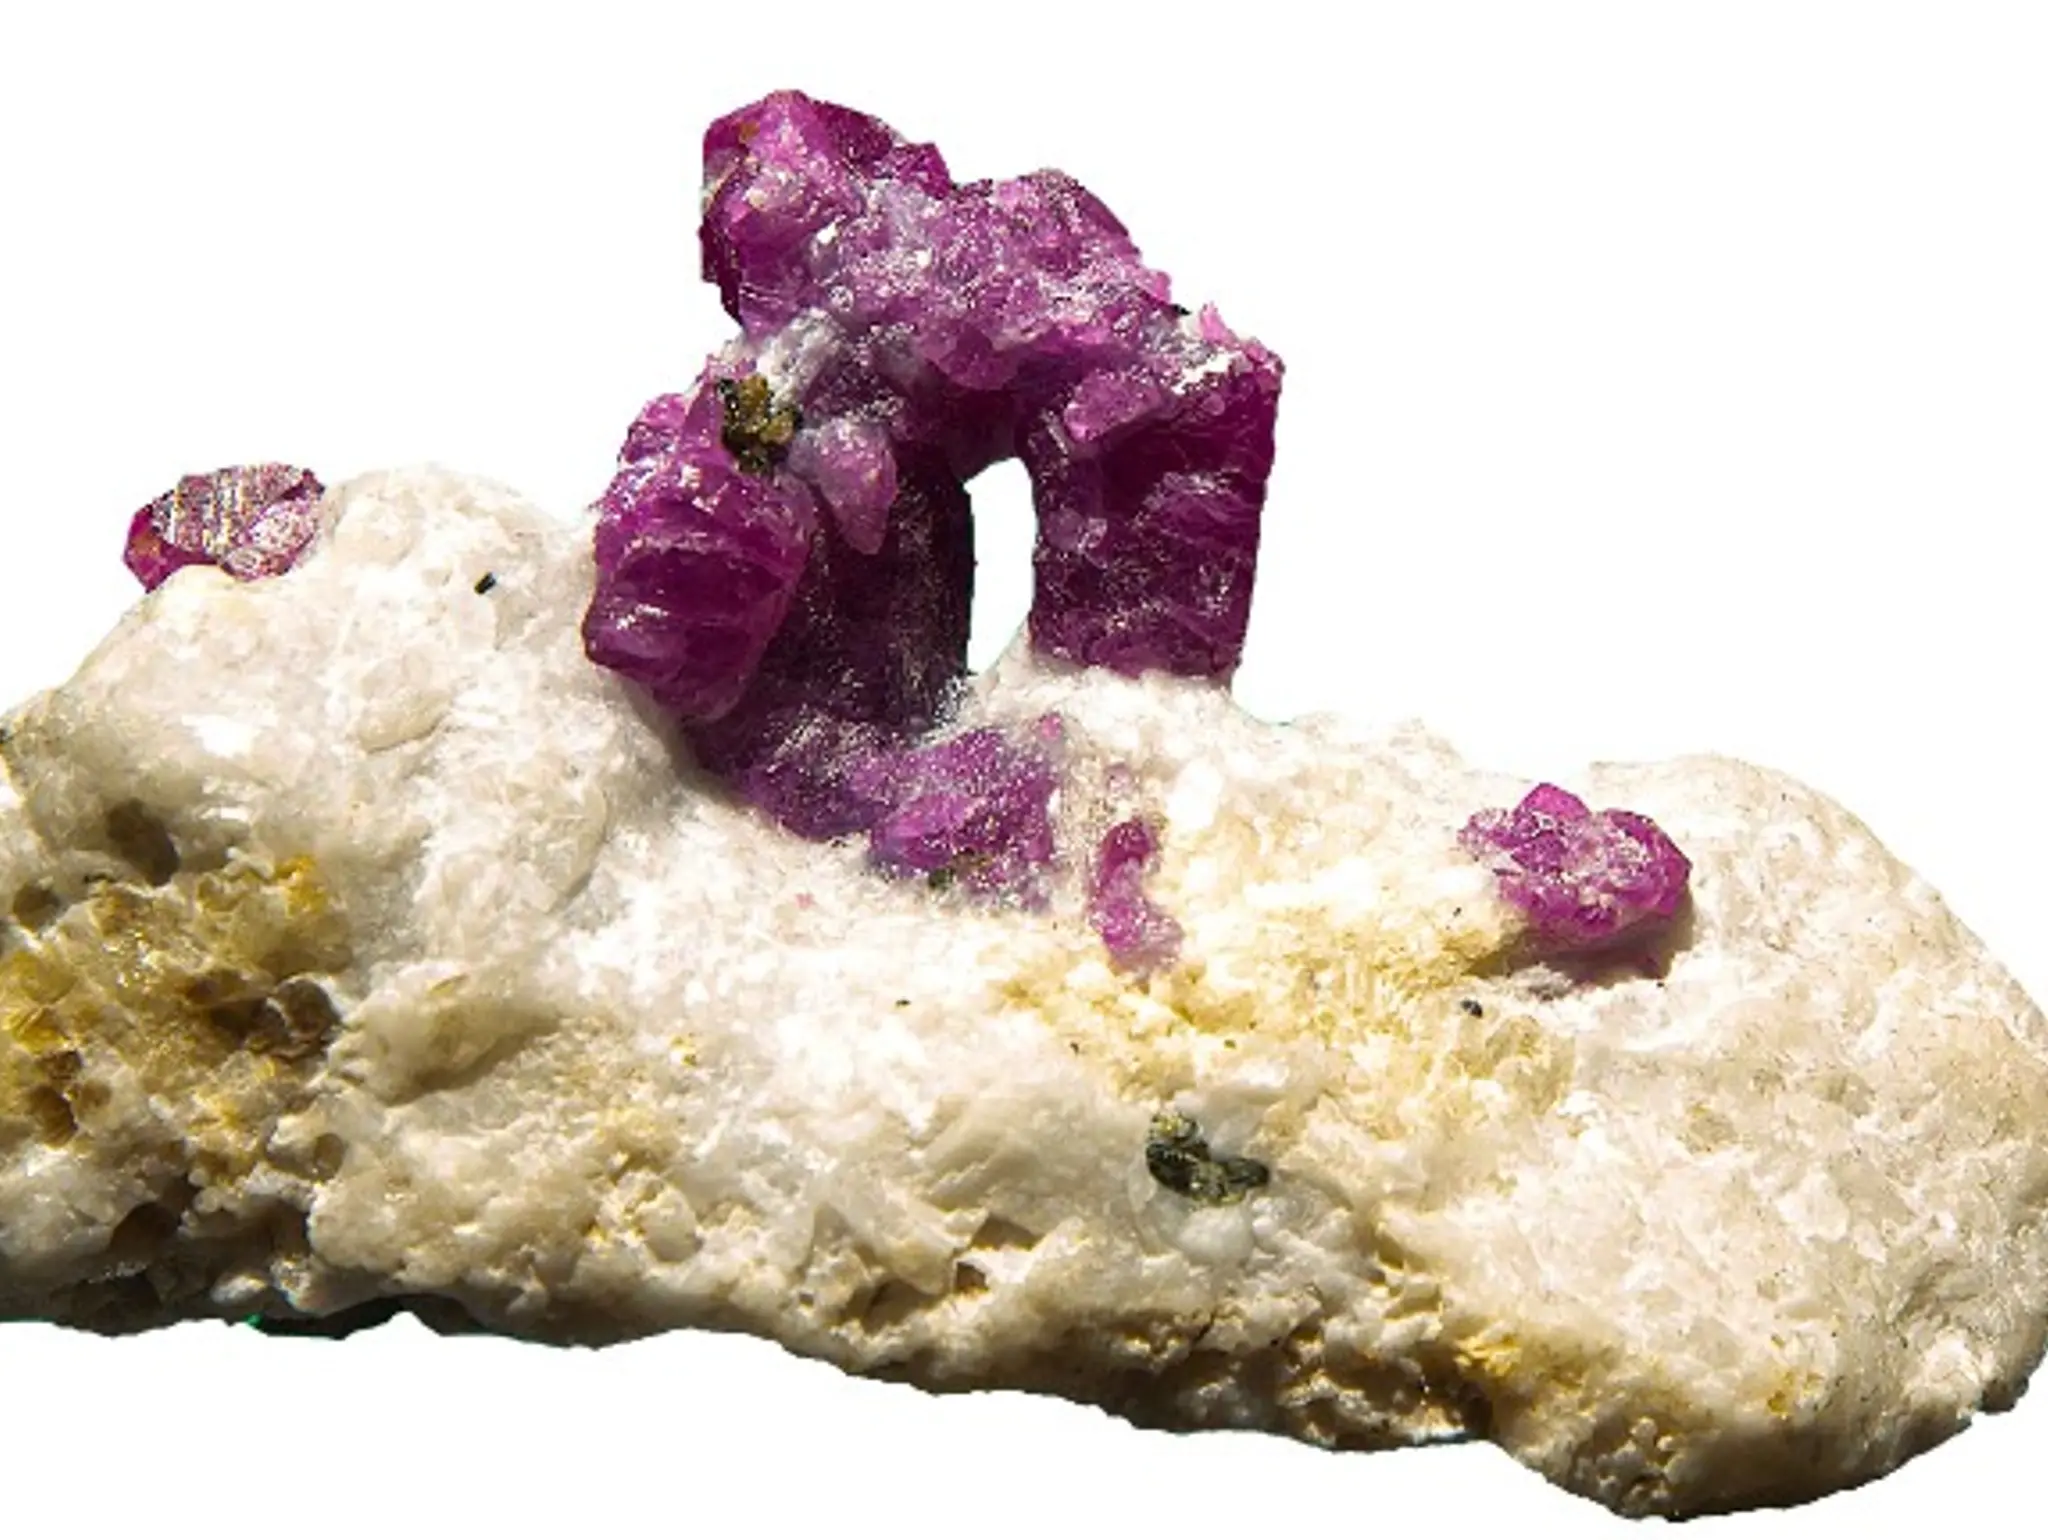 452 ธรรมชาติ ทํามาโชว์ หินสีมณีแดง ราชา-ราชินีแห่งพลอย